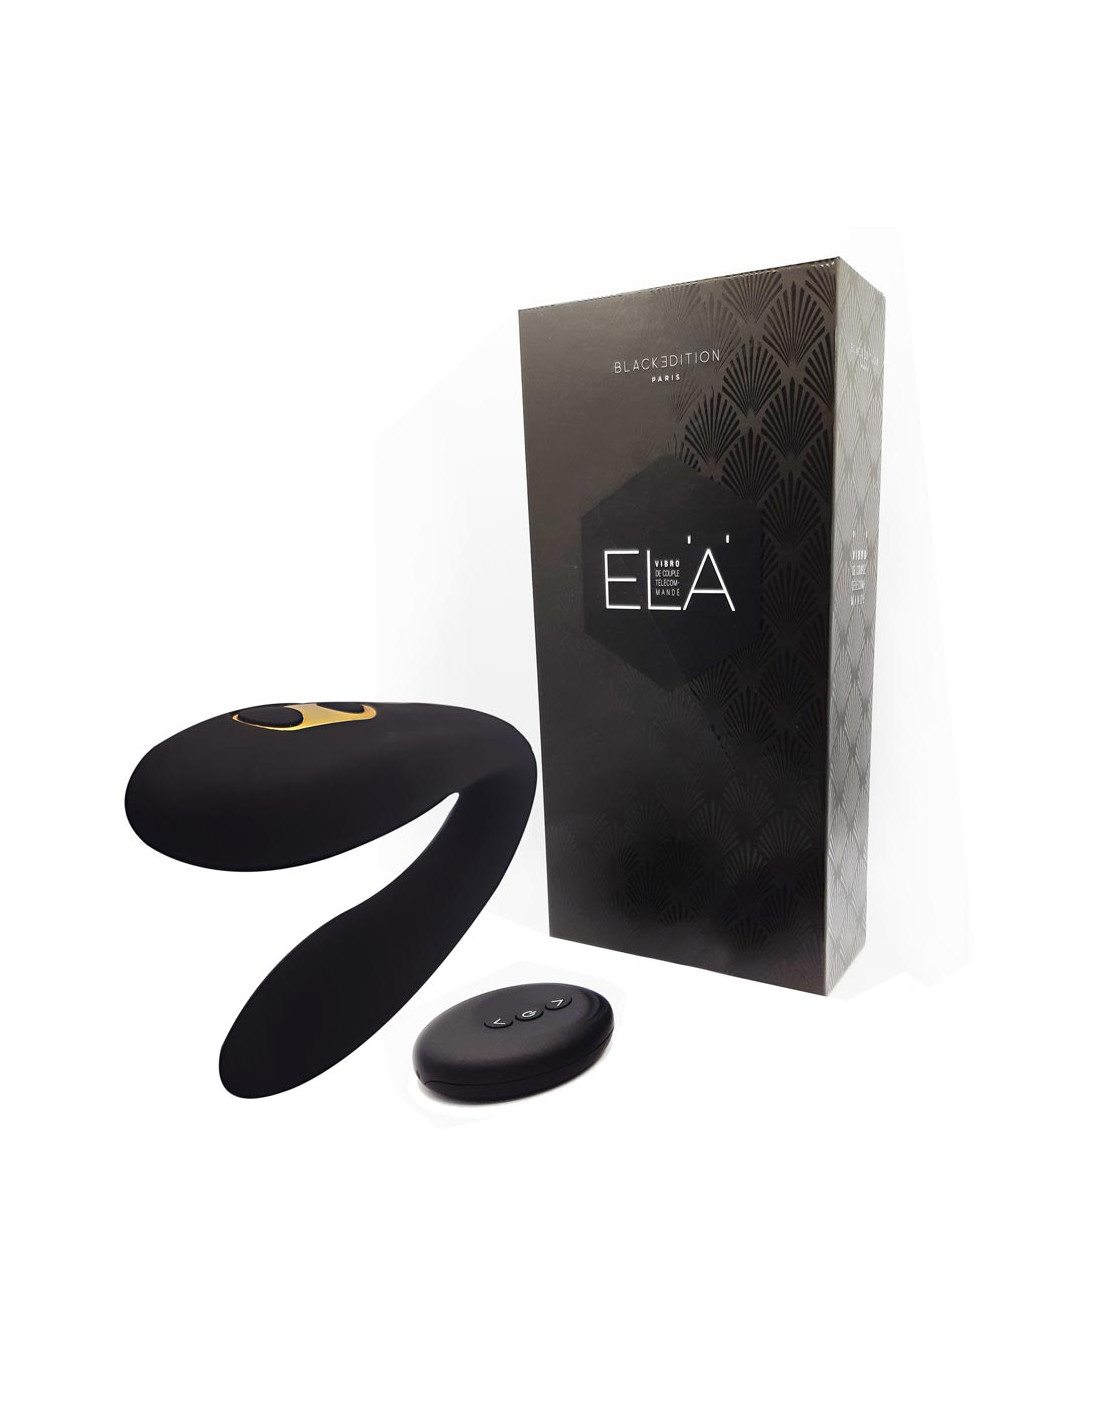 Black Edition Stimulateur de couple telecommande ELA ed